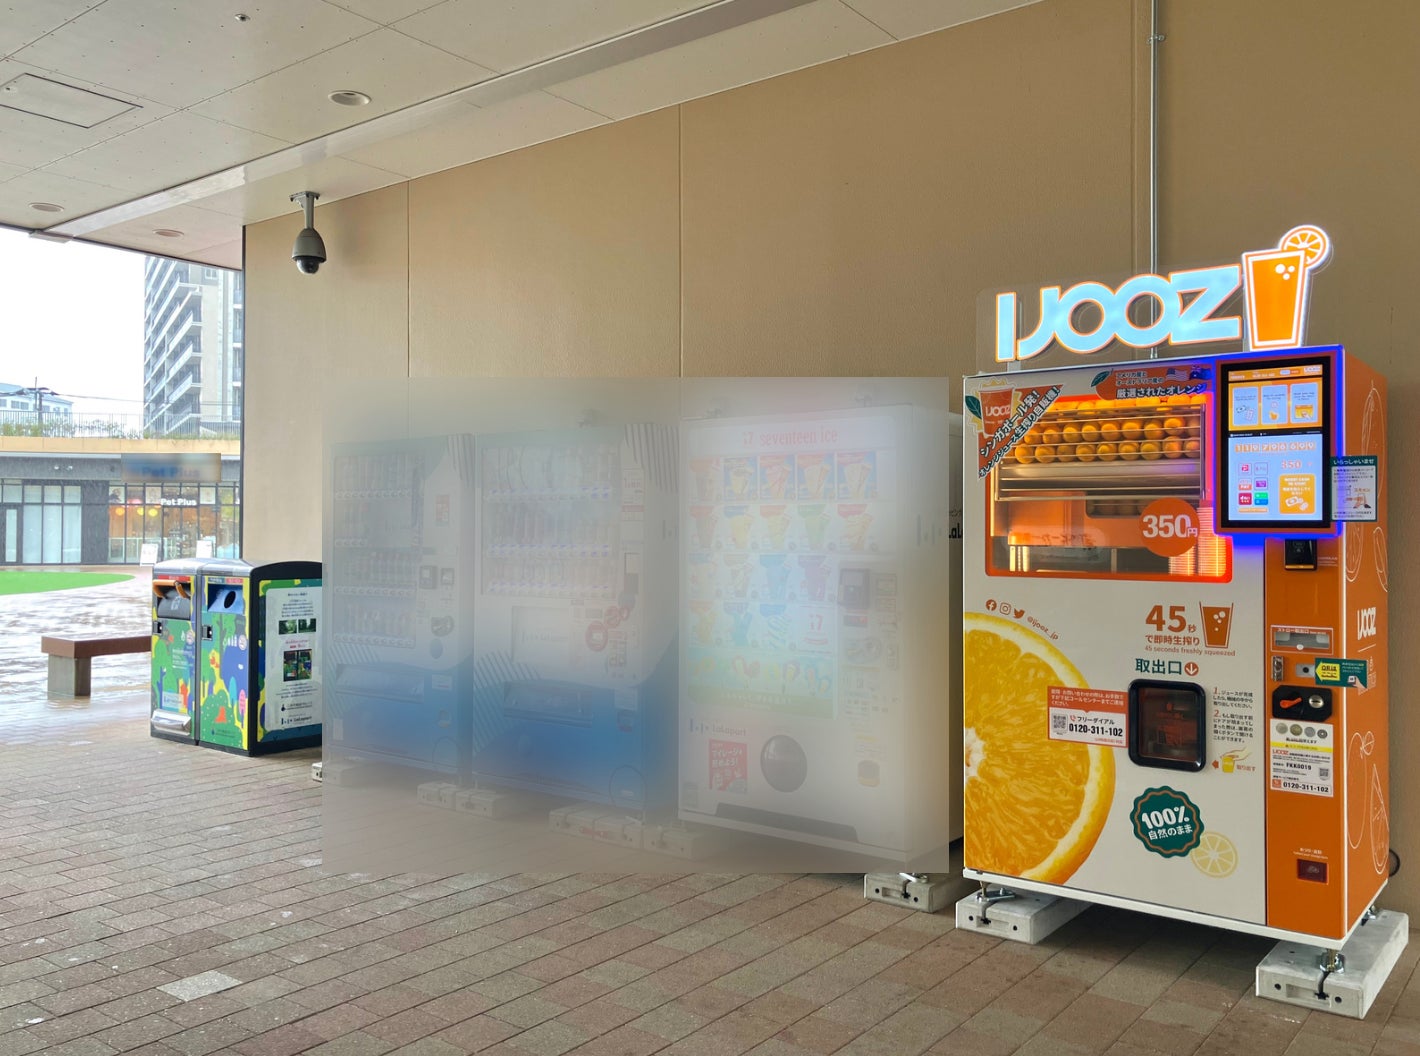 【福岡市博多区】三井ショッピングパーク ららぽーと福岡で350円生搾りオレンジジュース自販機「IJOOZ」が2台稼働開始